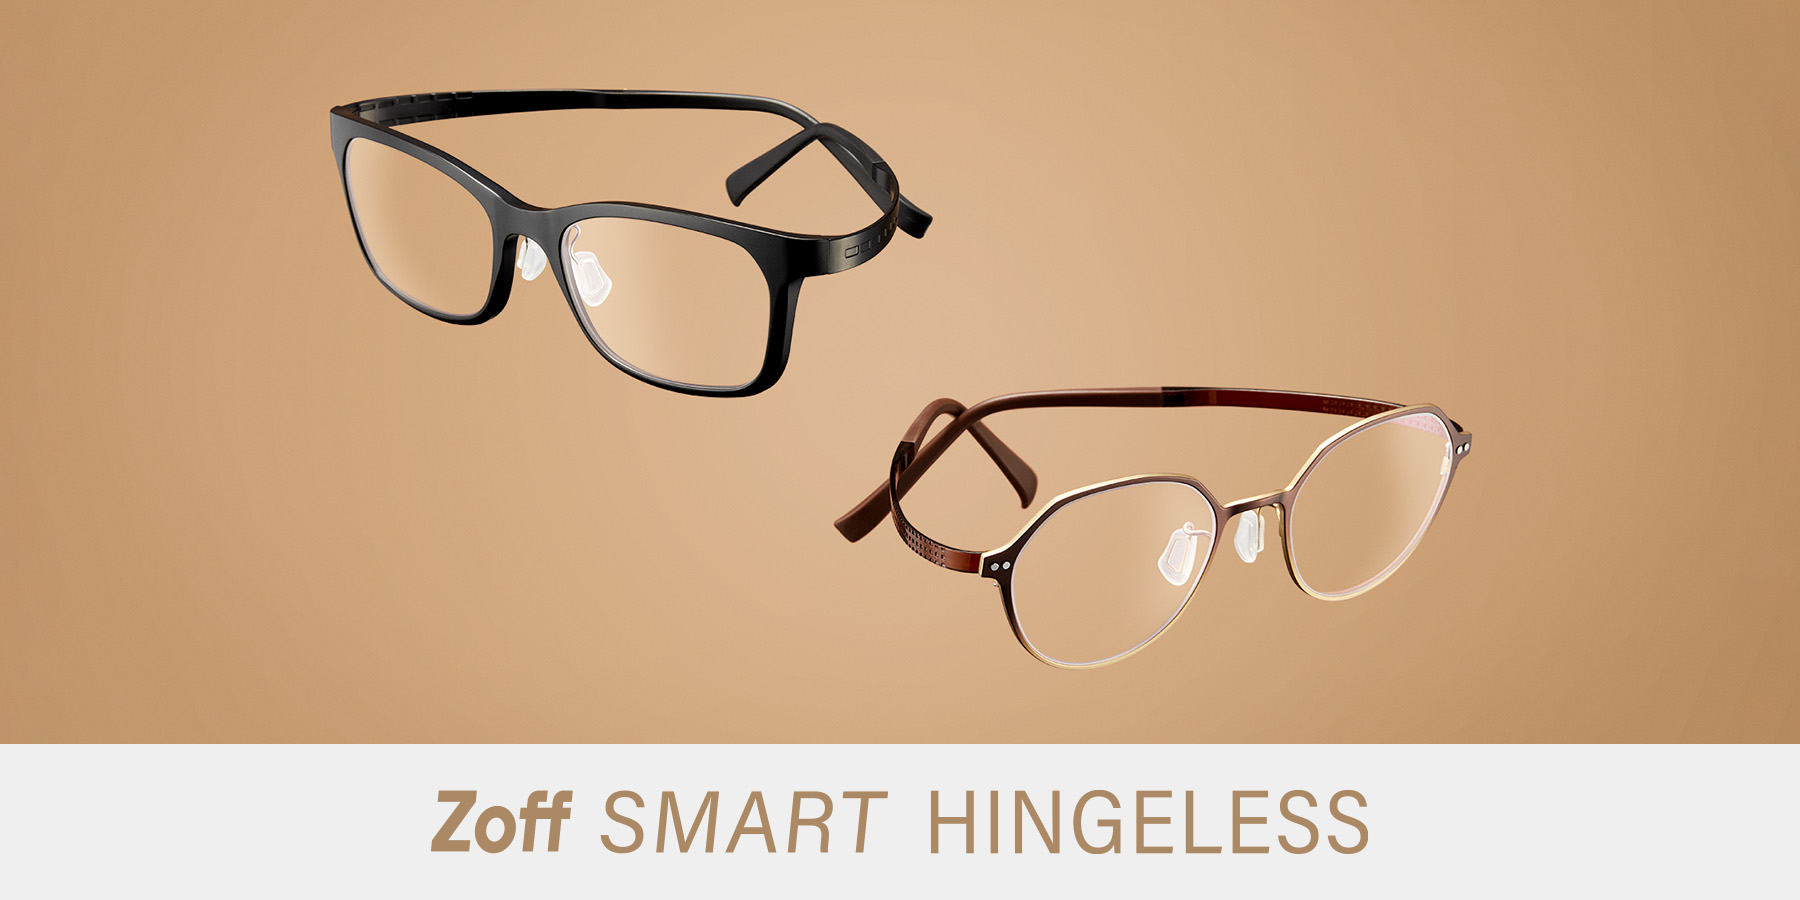 メガネ実用者にぴったりの「Zoff SMART HINGELESS」が登場。機能性に求める条件のTOP5を兼ね備えた、理想的なかけ心地を追求